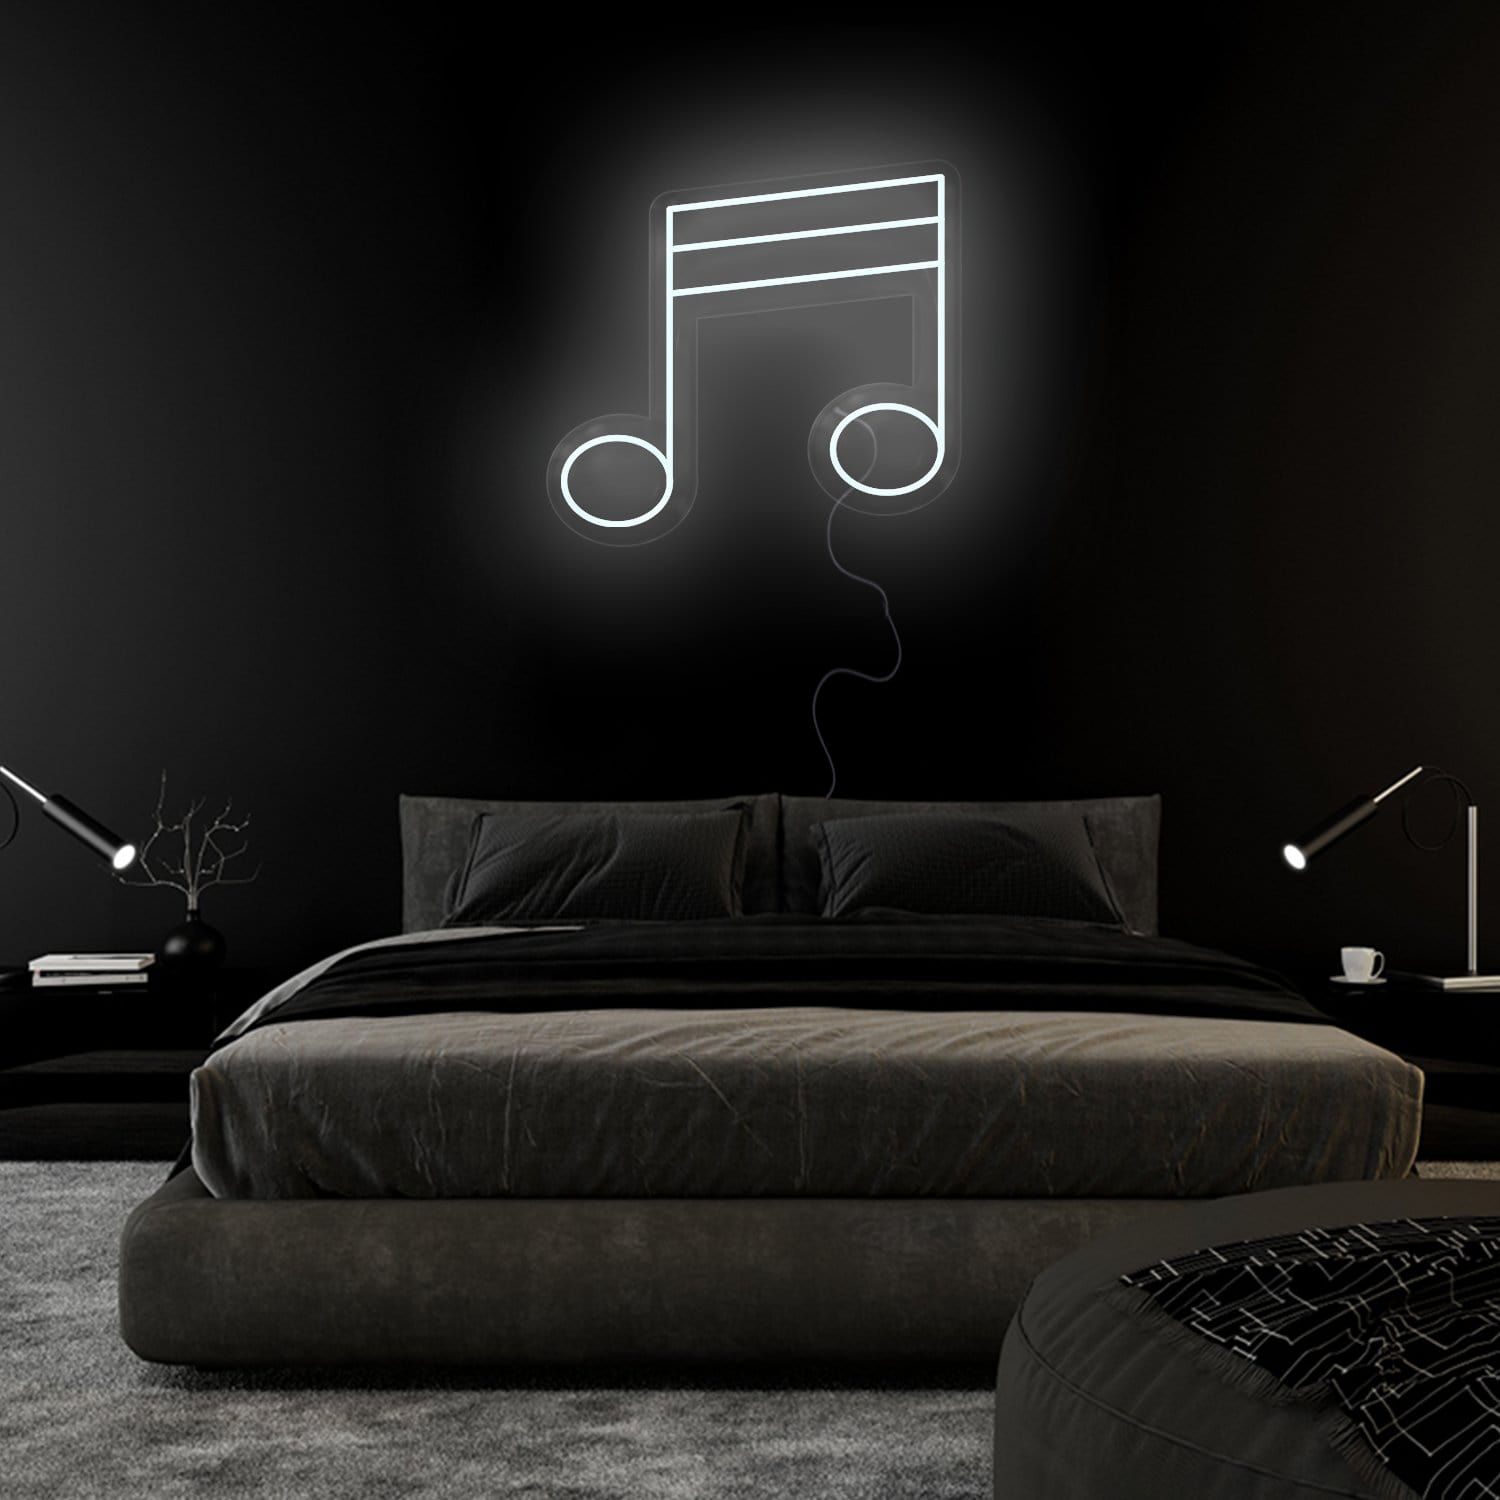 "Music Musik " LED Neonschild Sign Schriftzug - NEONEVERGLOW